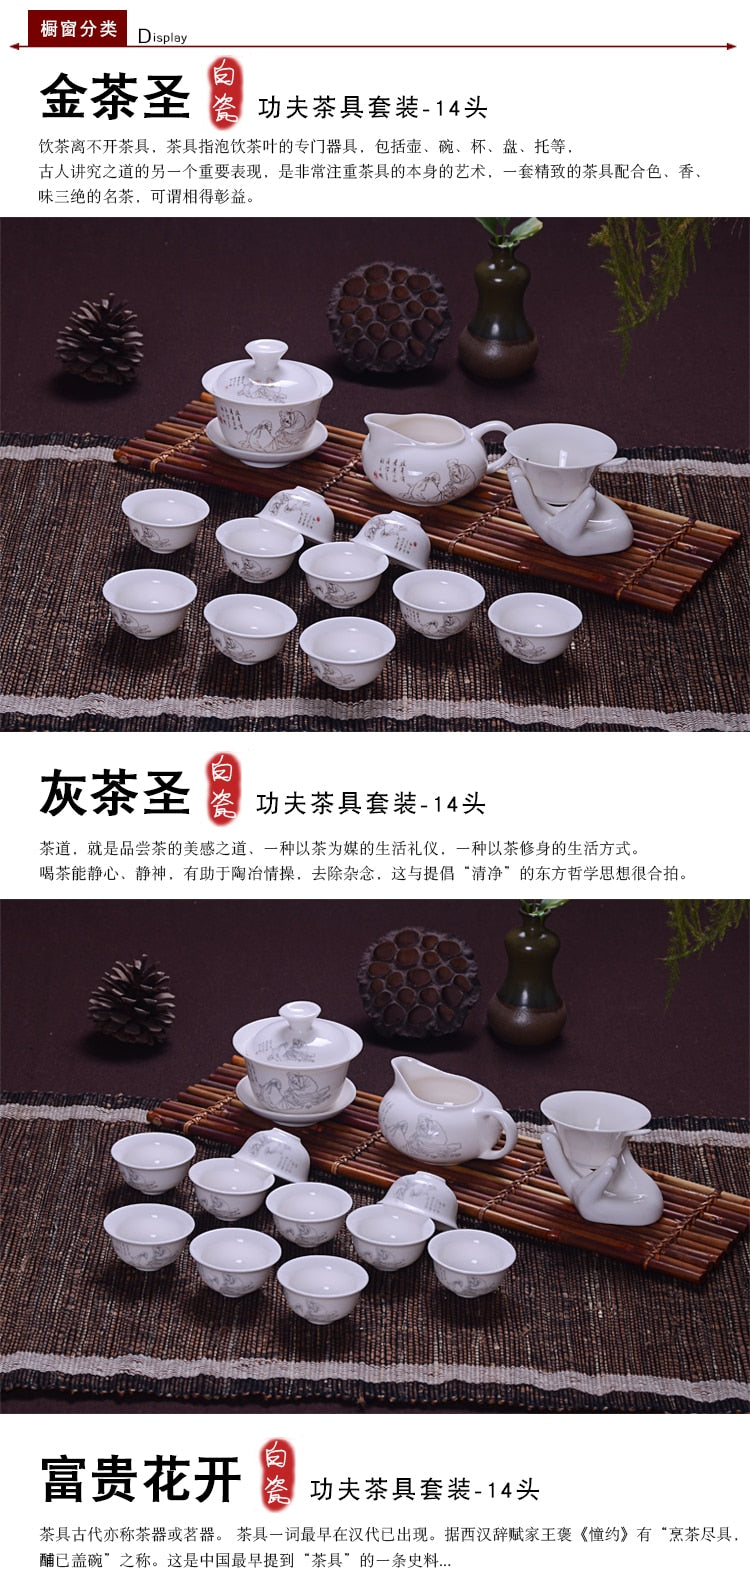 طقم شاي بورسلين اليشم الصيني لوتس جيوان